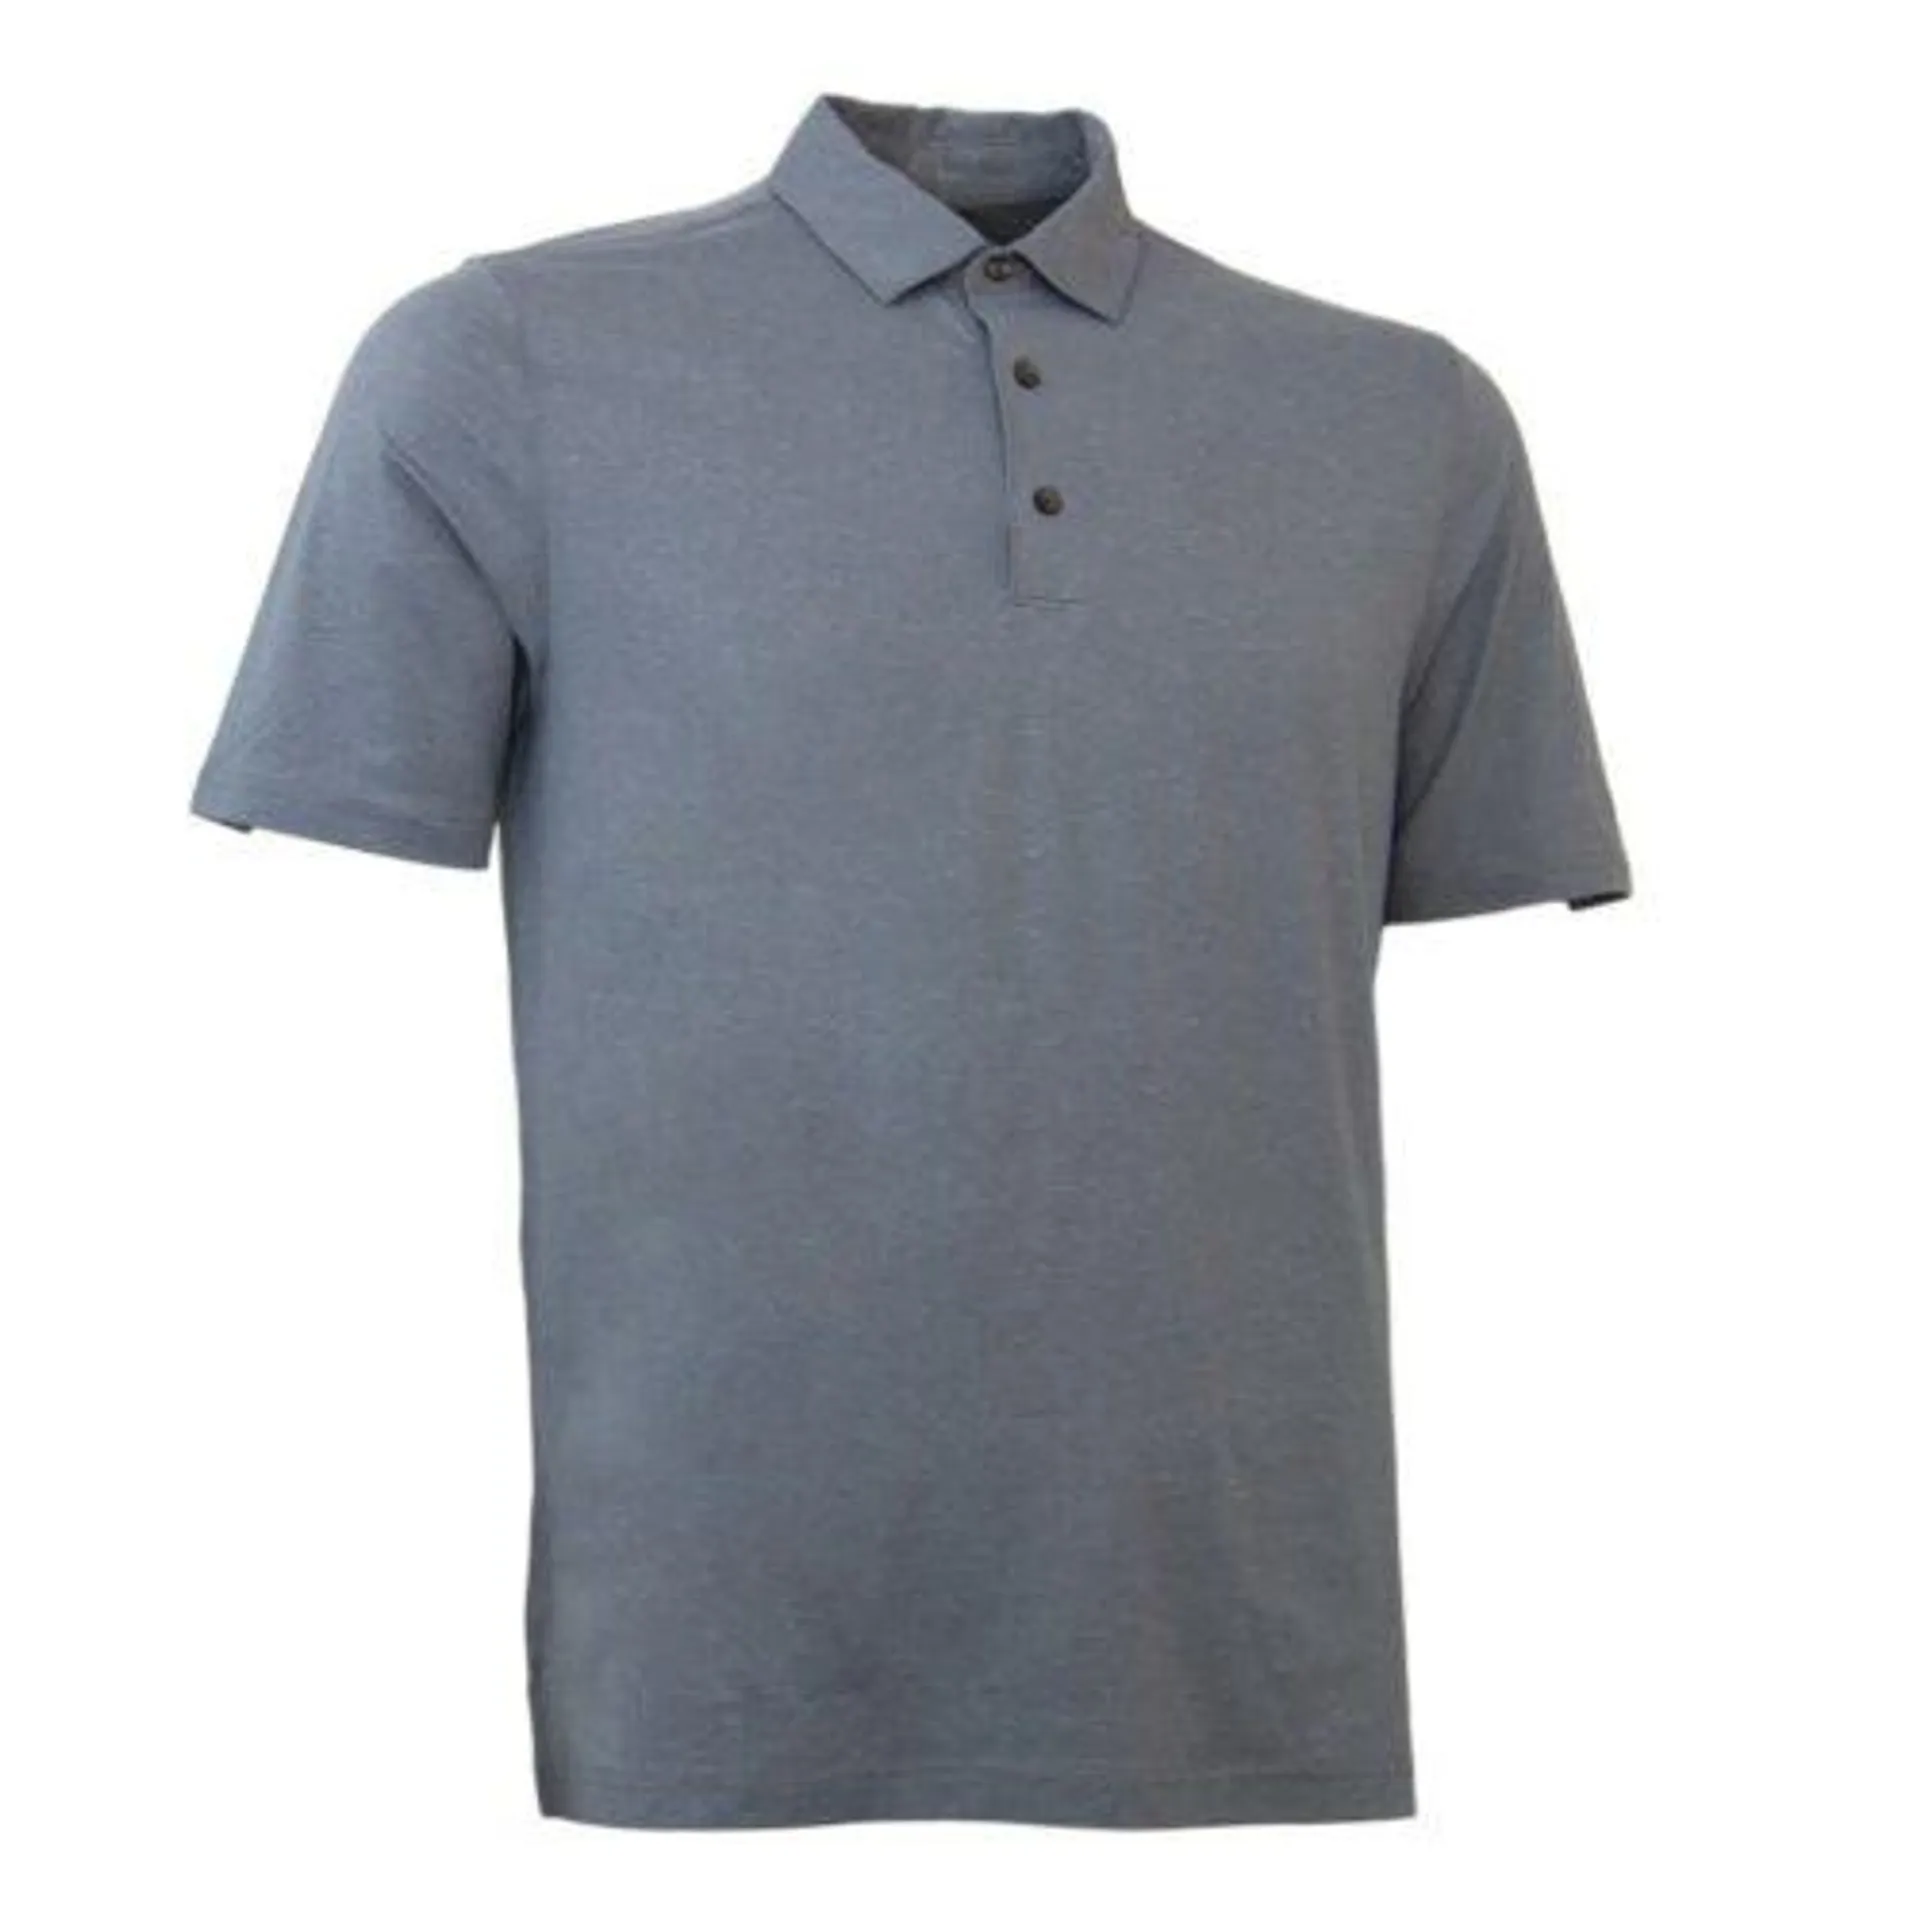 ADEaZ Shirt – Plain Smooth Grey